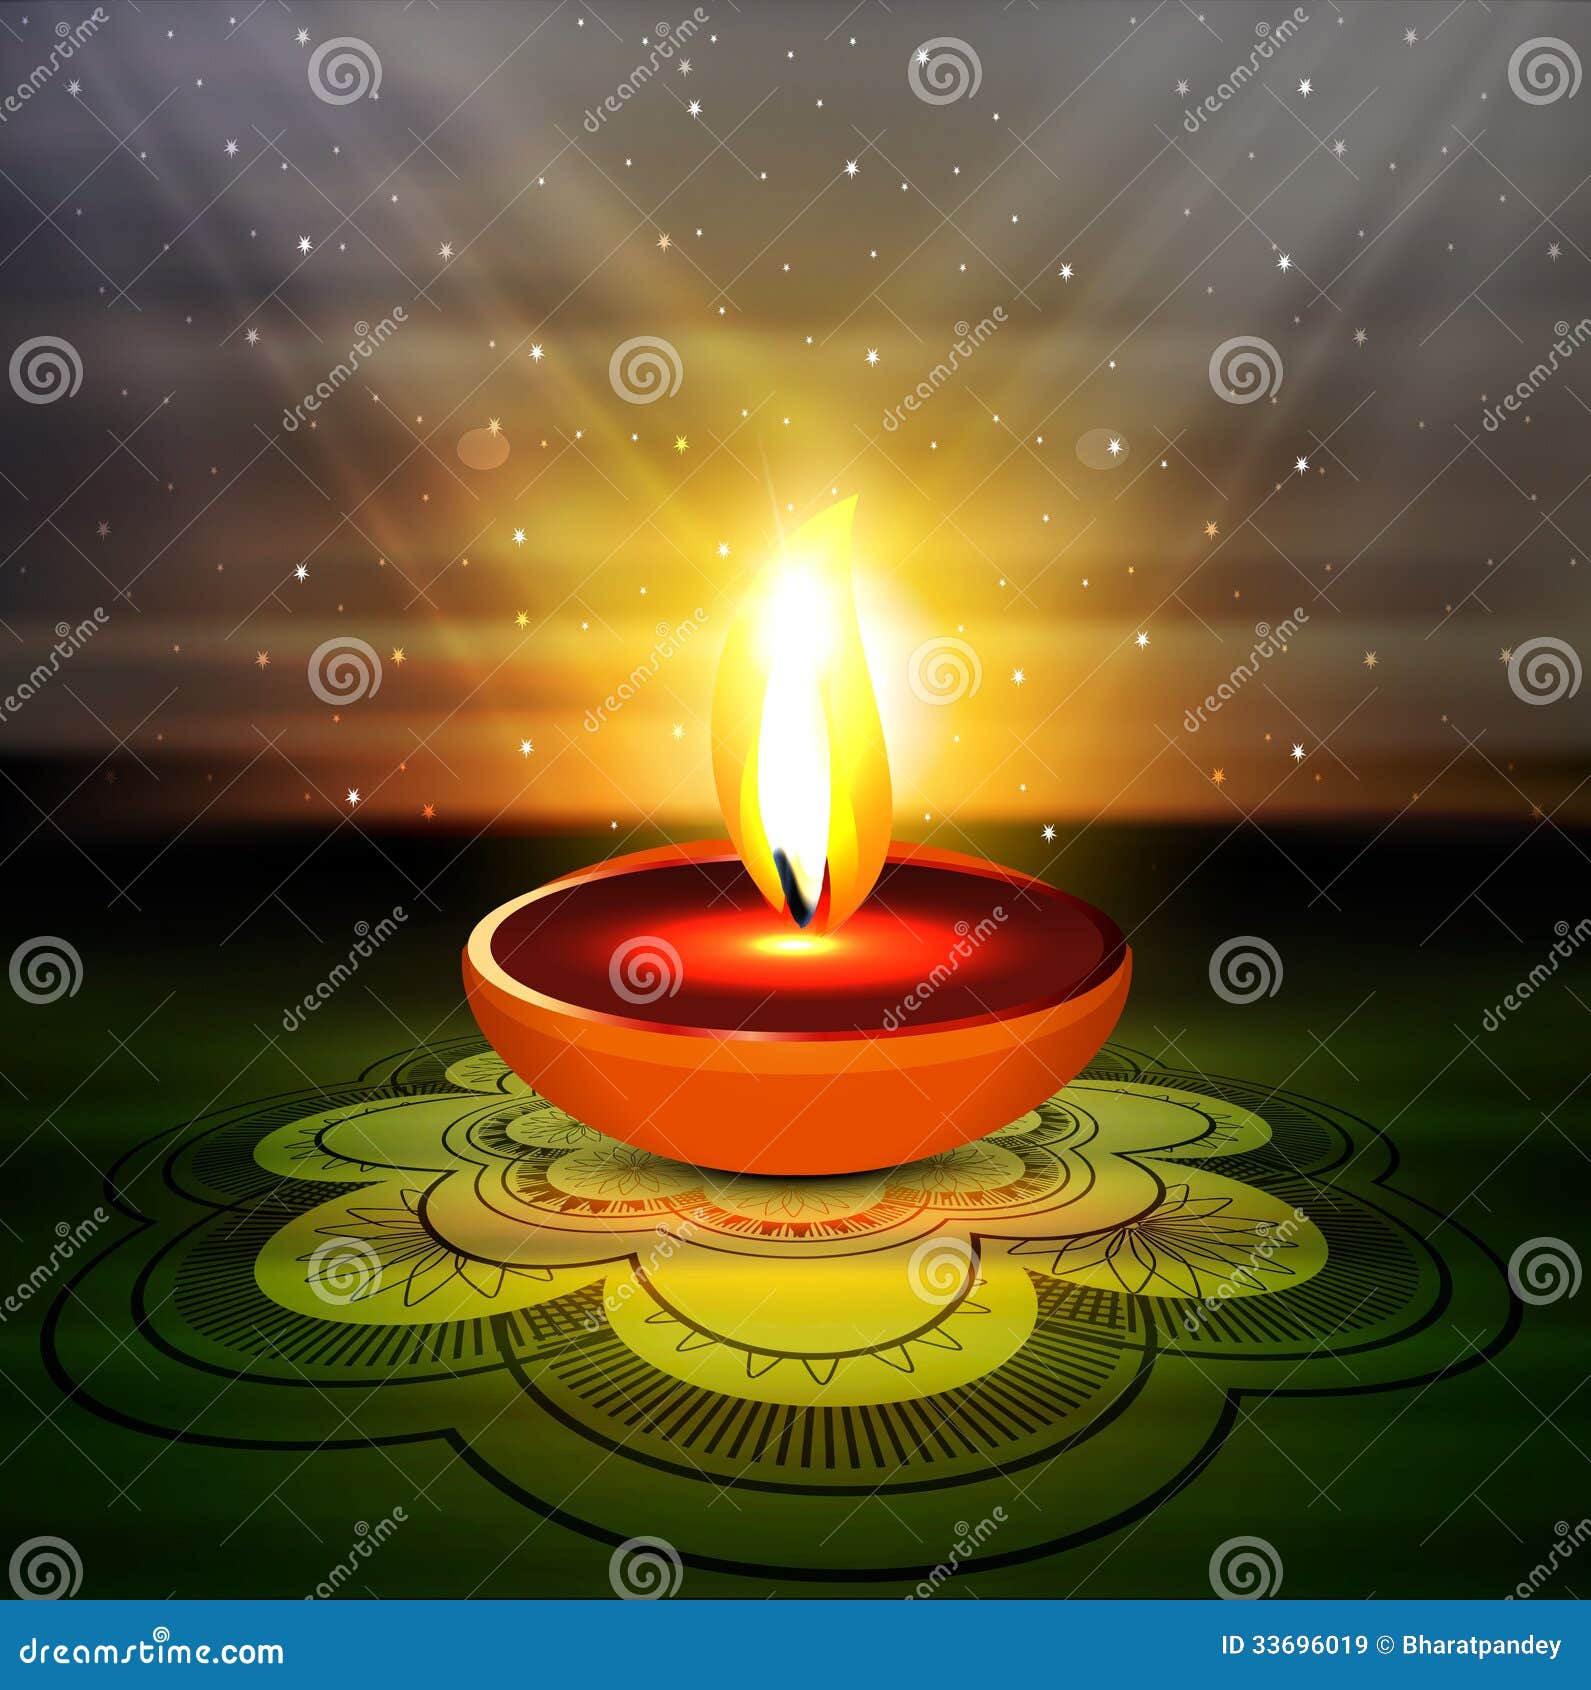 Happy Diwali Beautiful Diya Rangoli Colorful Hindu Stock Vector ...